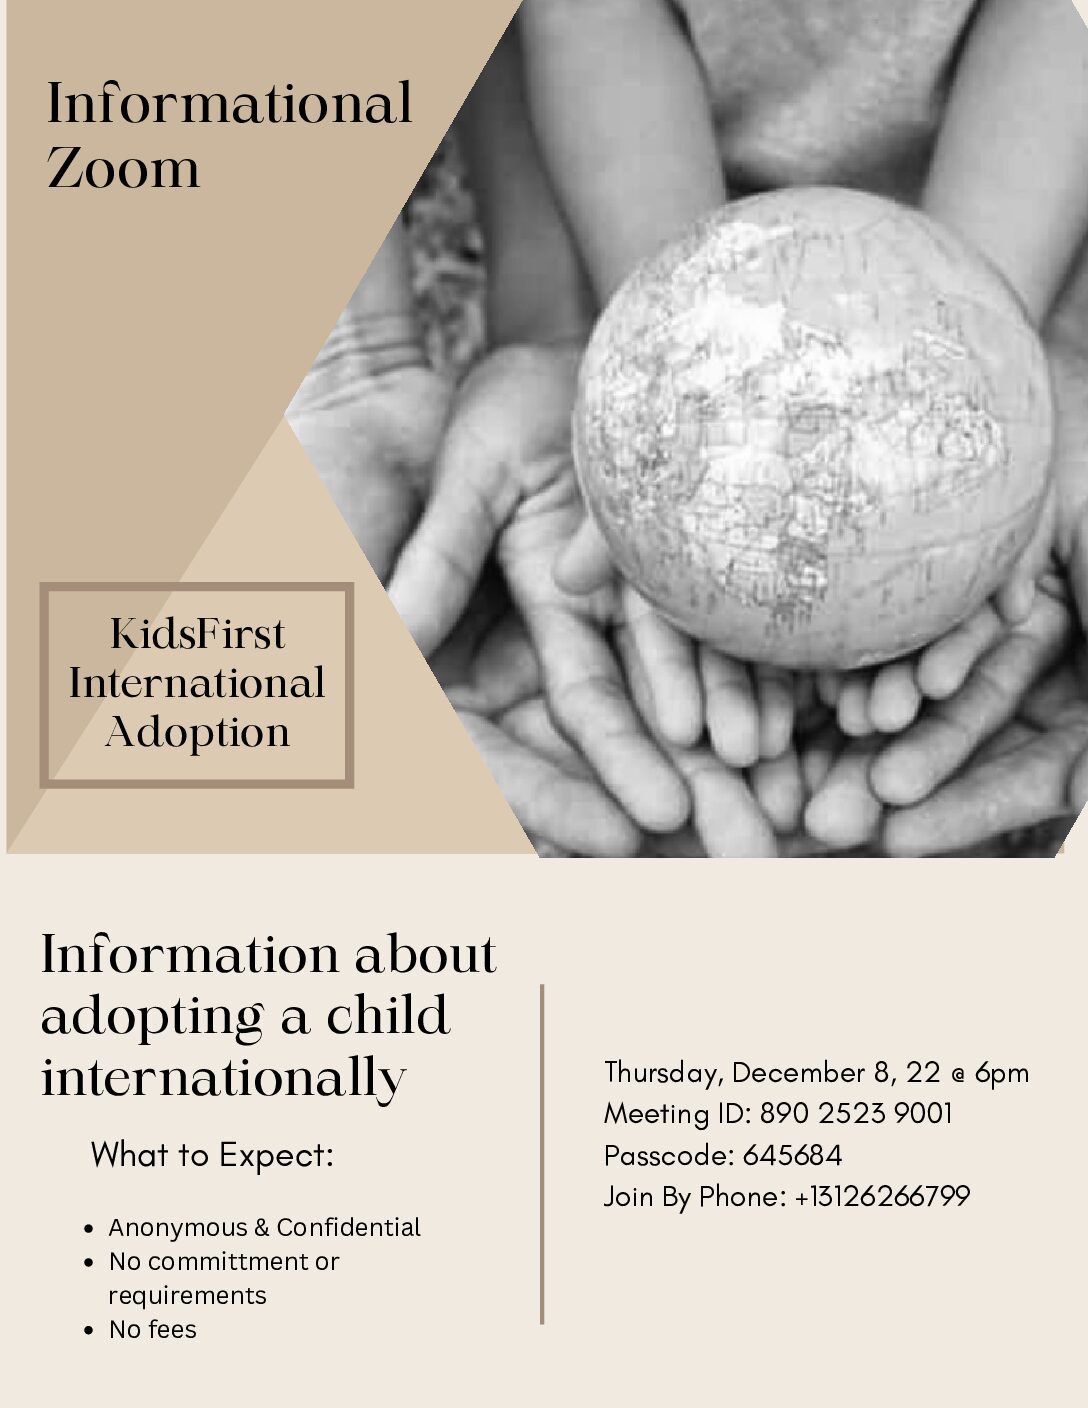 Zoom for international adoption: Thursday, December 8 @ 6 pm